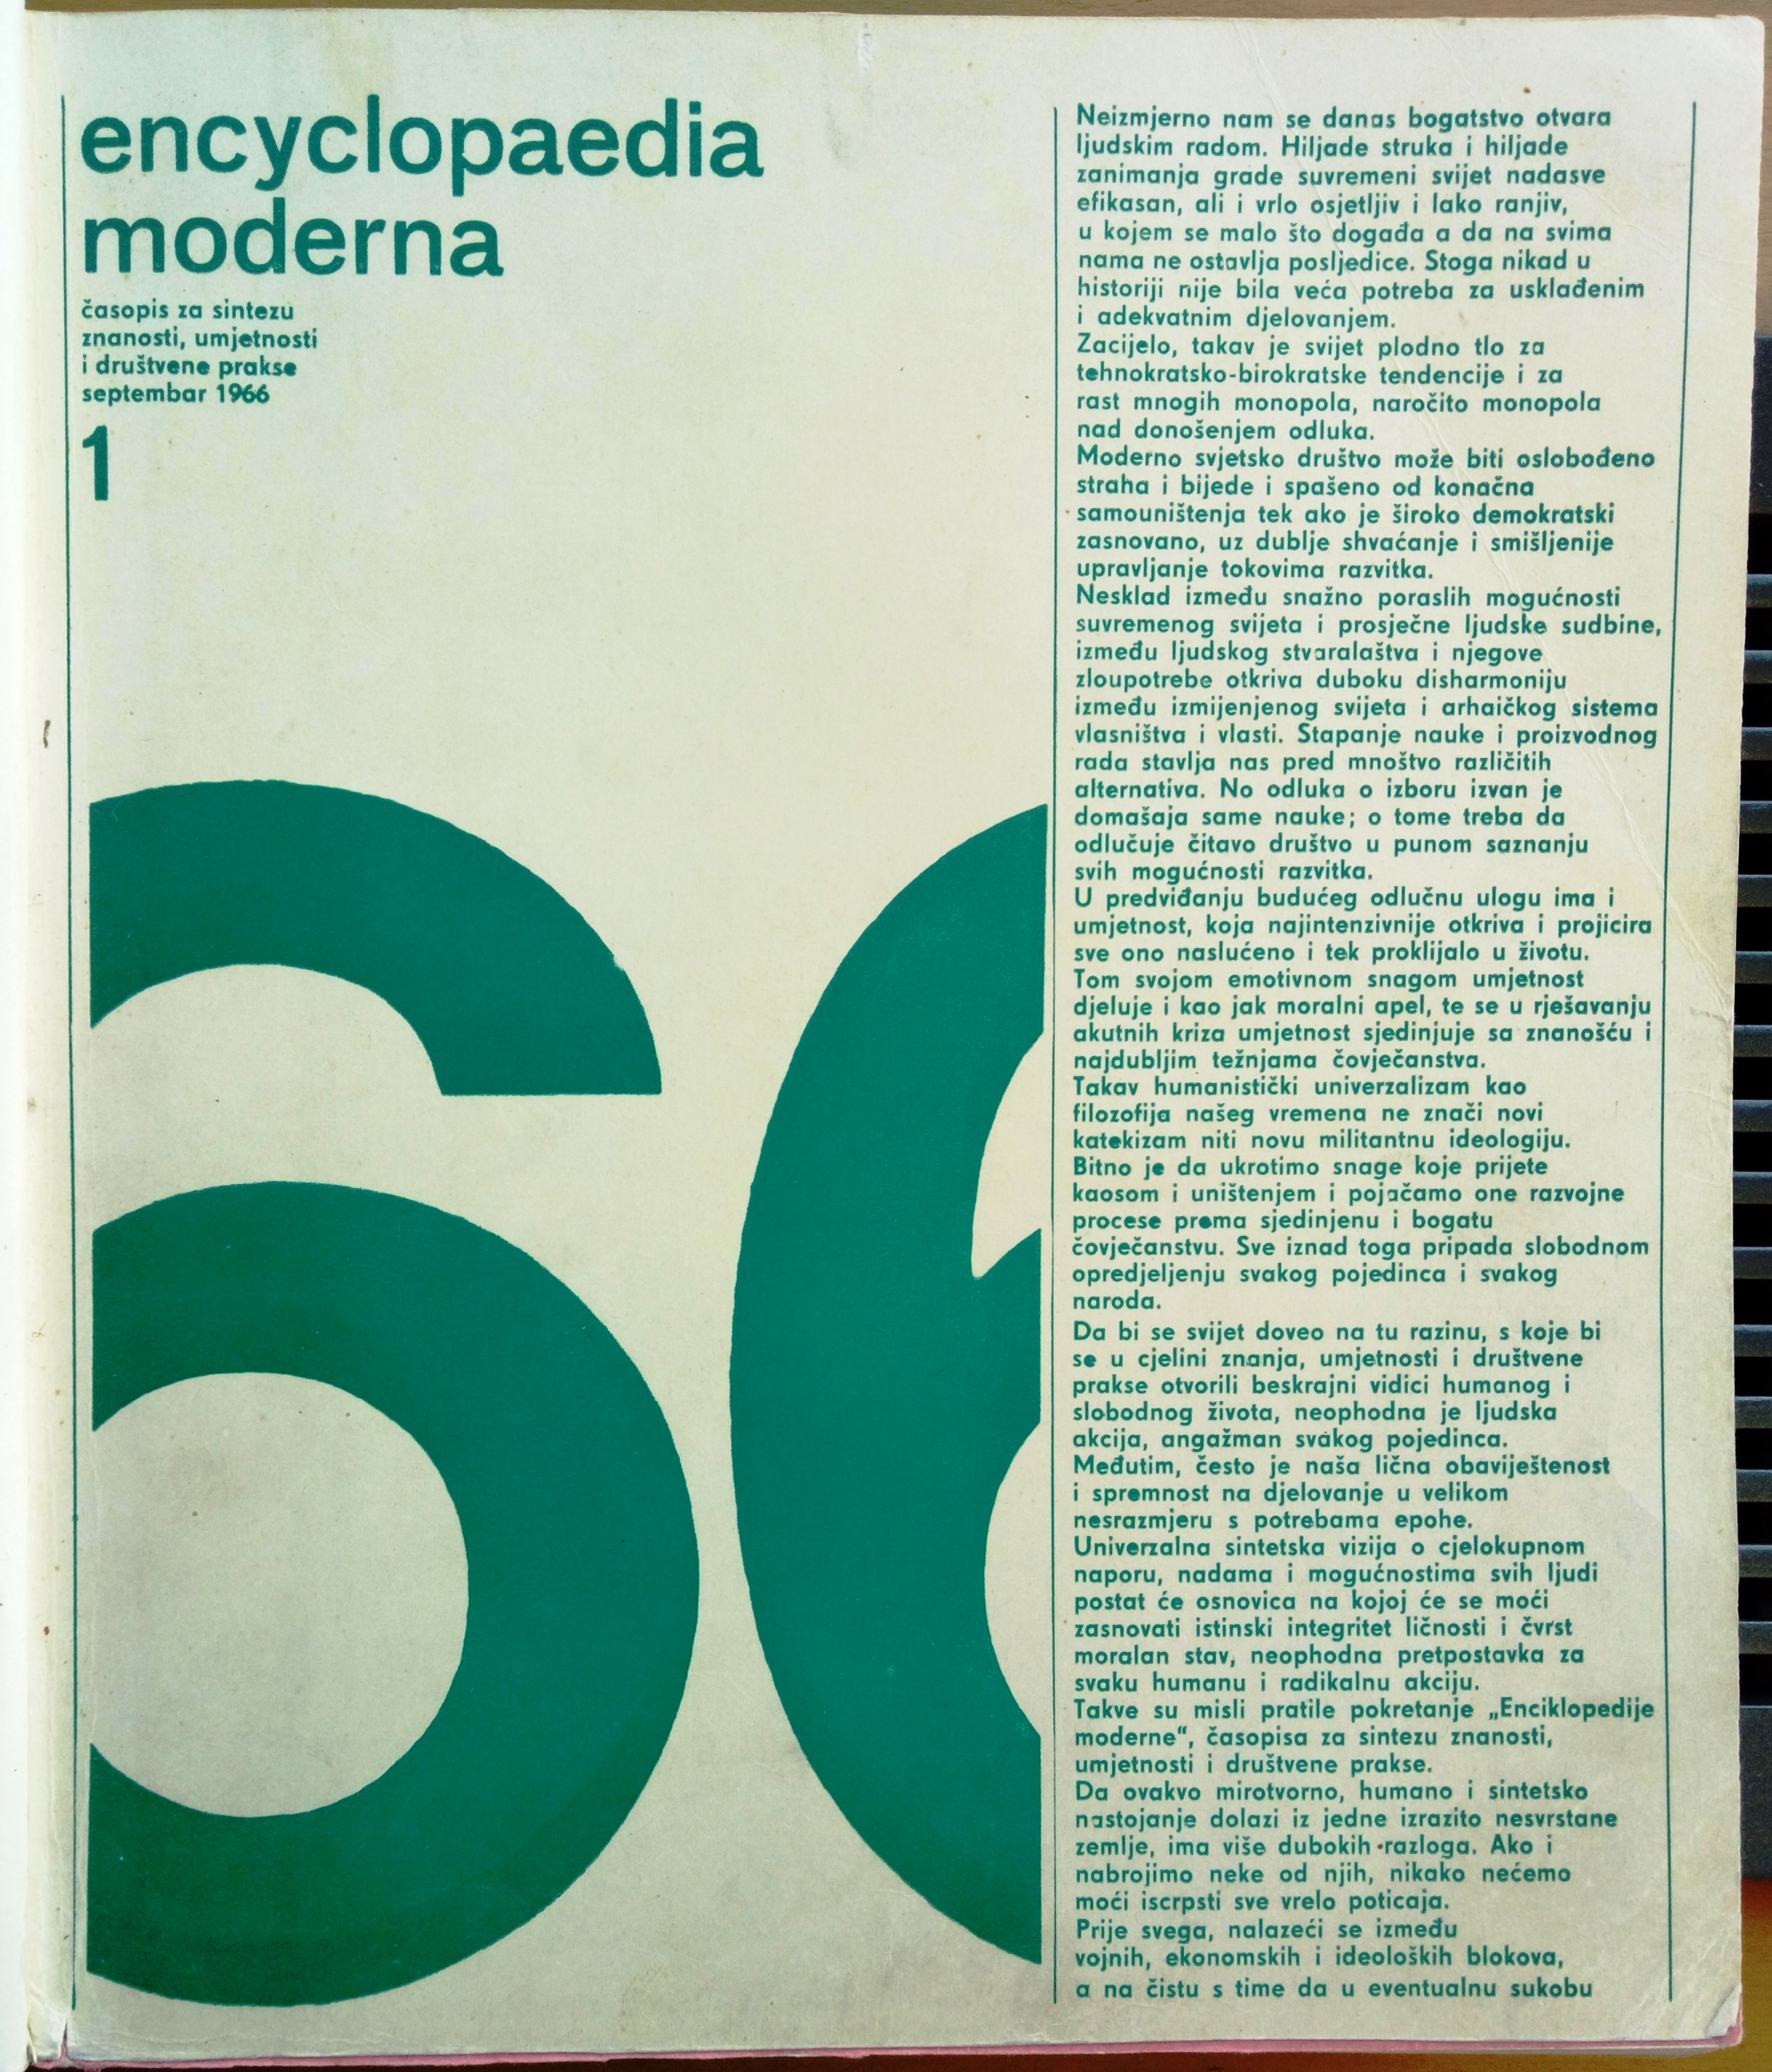 Cover page of the first issue of the journal Encyclopaedia moderna, 1966, Pagwash Movement Collection/Naslovnica prvog broja časopisa Encyclopaedia moderna, 1966., Zbirka Pagvaškog pokreta HAZU 